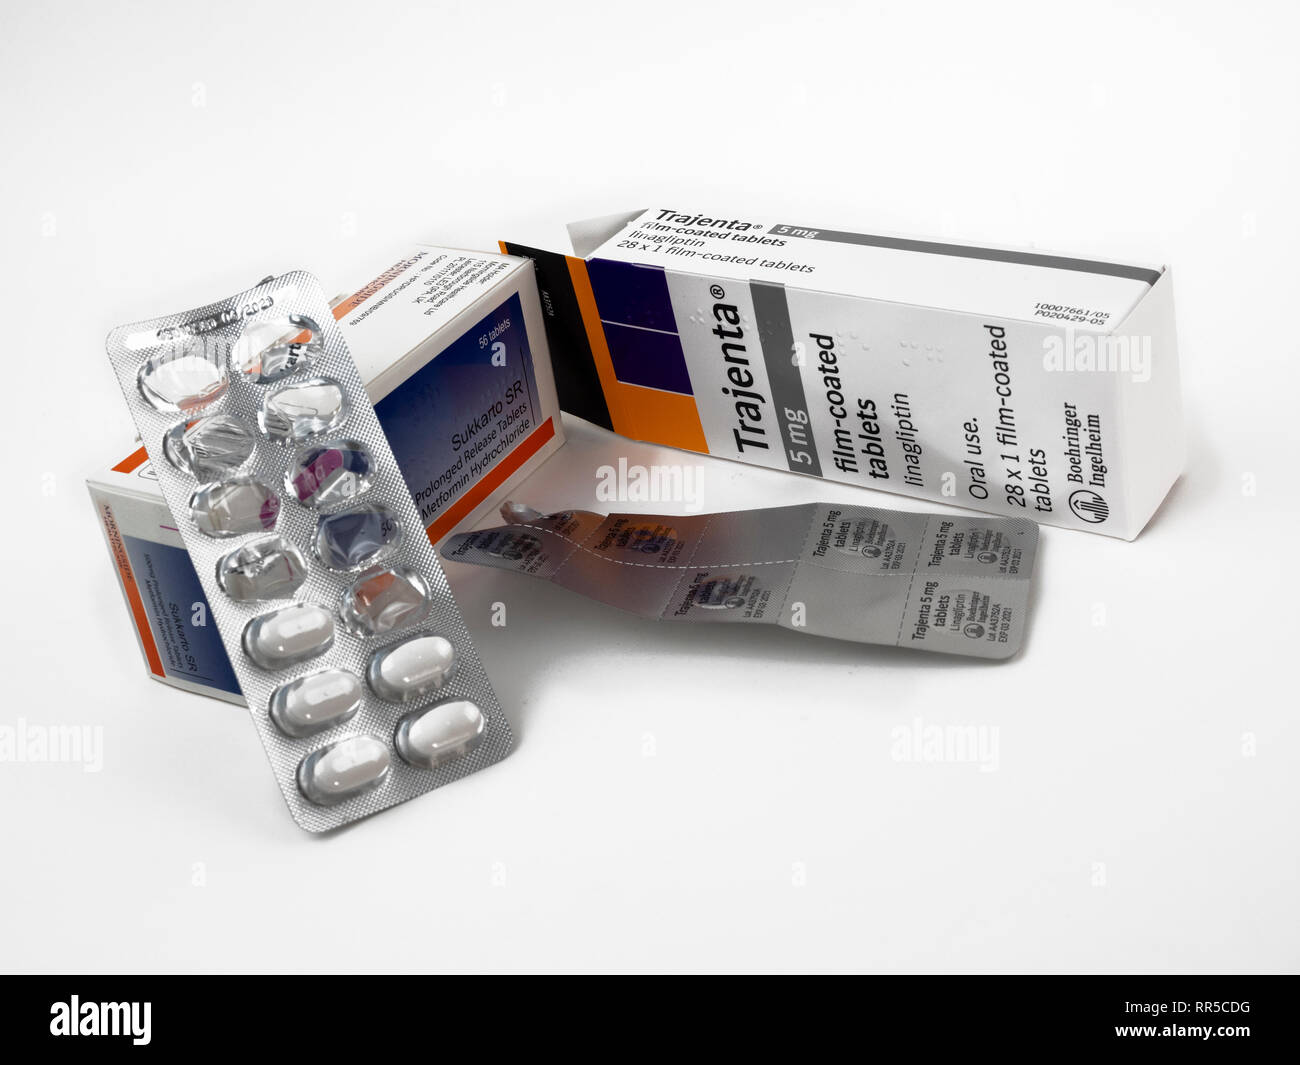 Metformina de liberación lenta y linagliptin (Trajenta) medicamentos para la diabetes tipo 2 Foto de stock